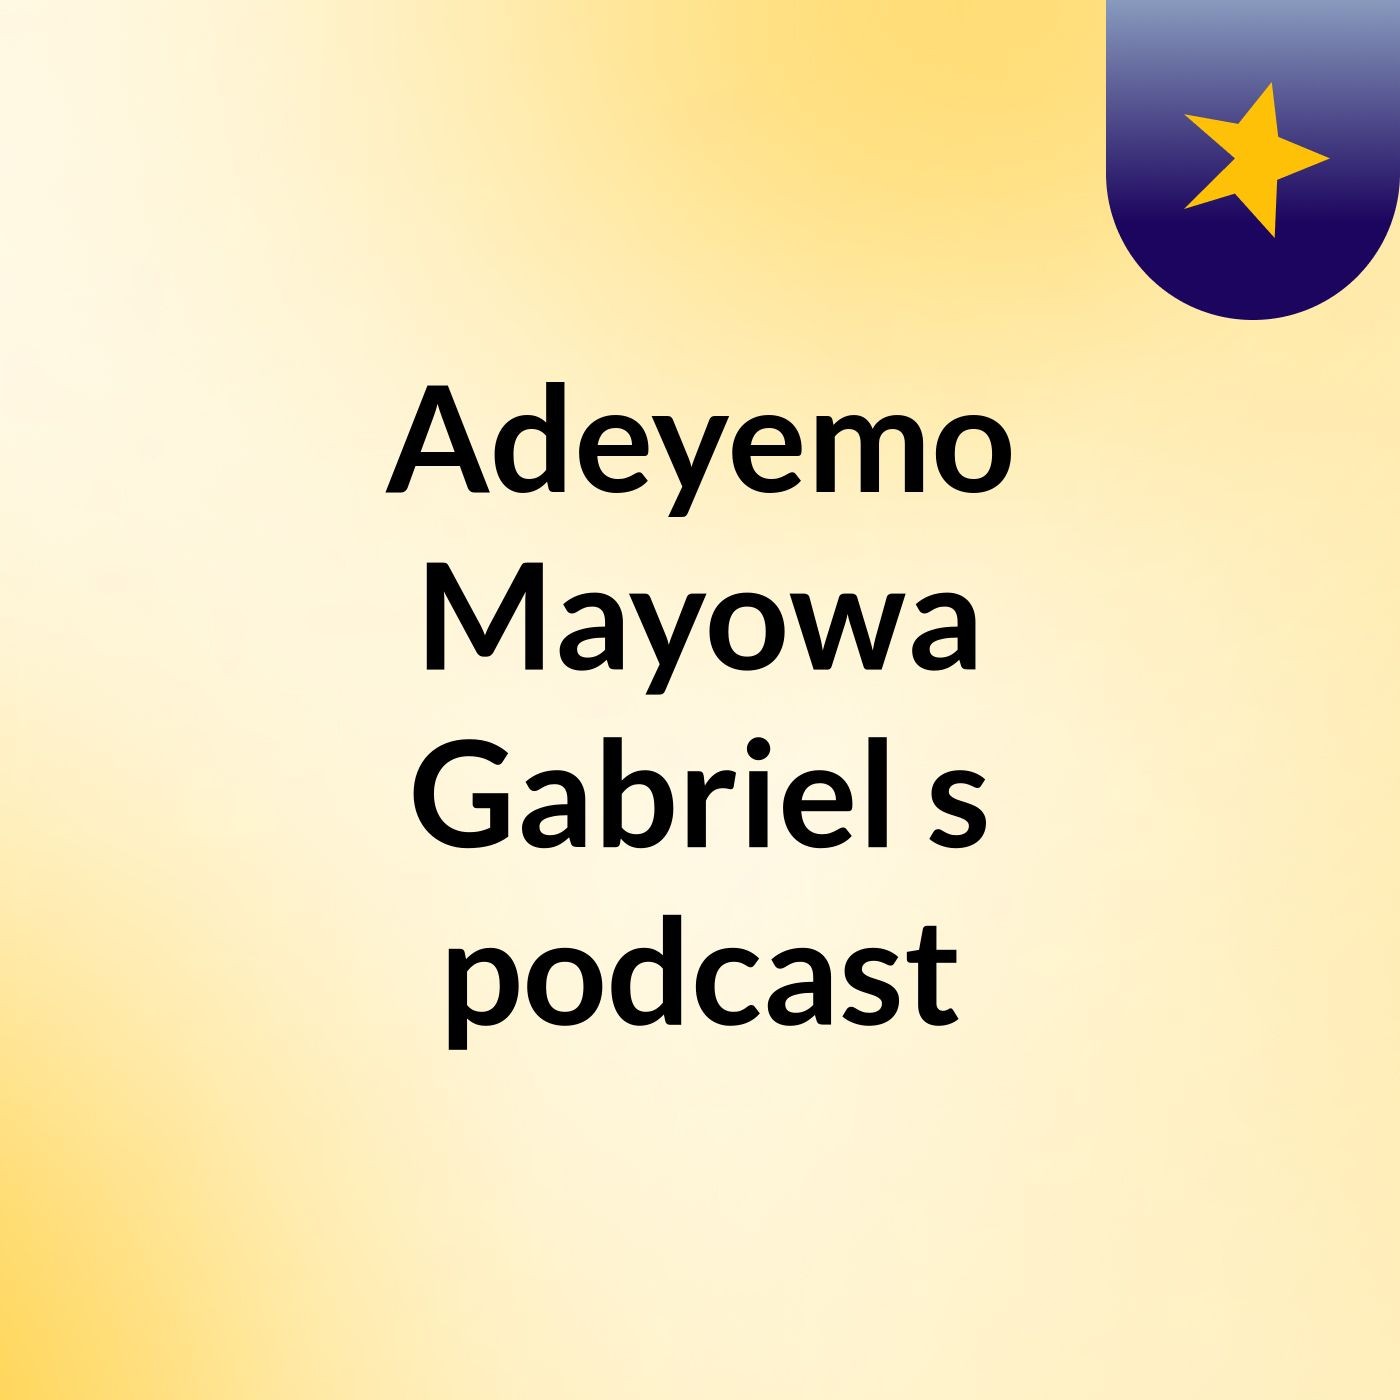 Adeyemo Mayowa Gabriel's podcast